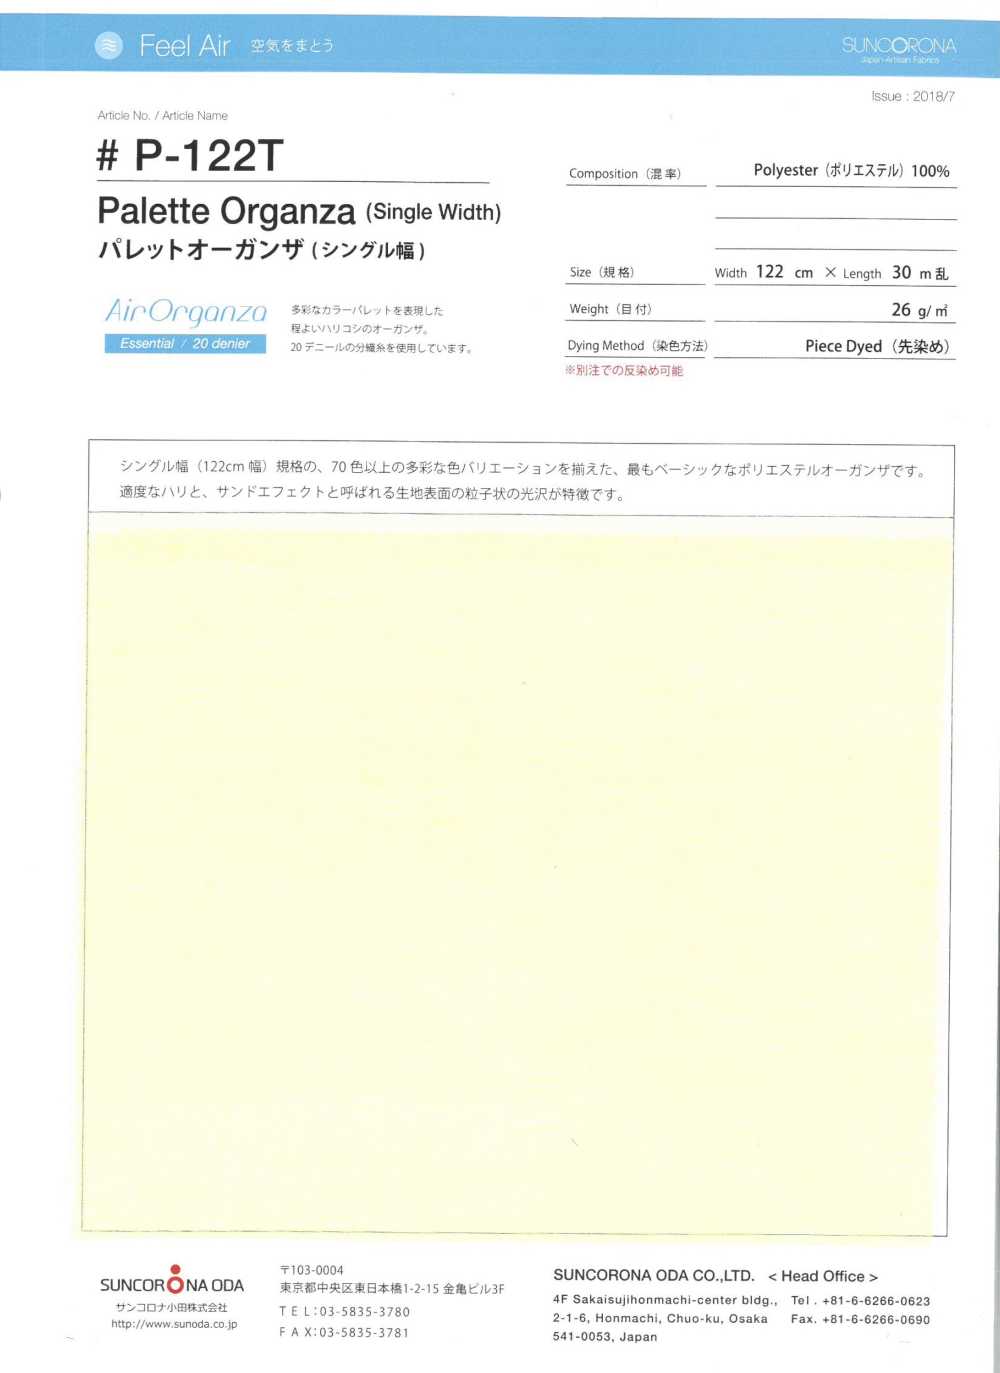 P-122T Palet Organza (Ancho Sencillo)[Fabrica Textil] Suncorona Oda